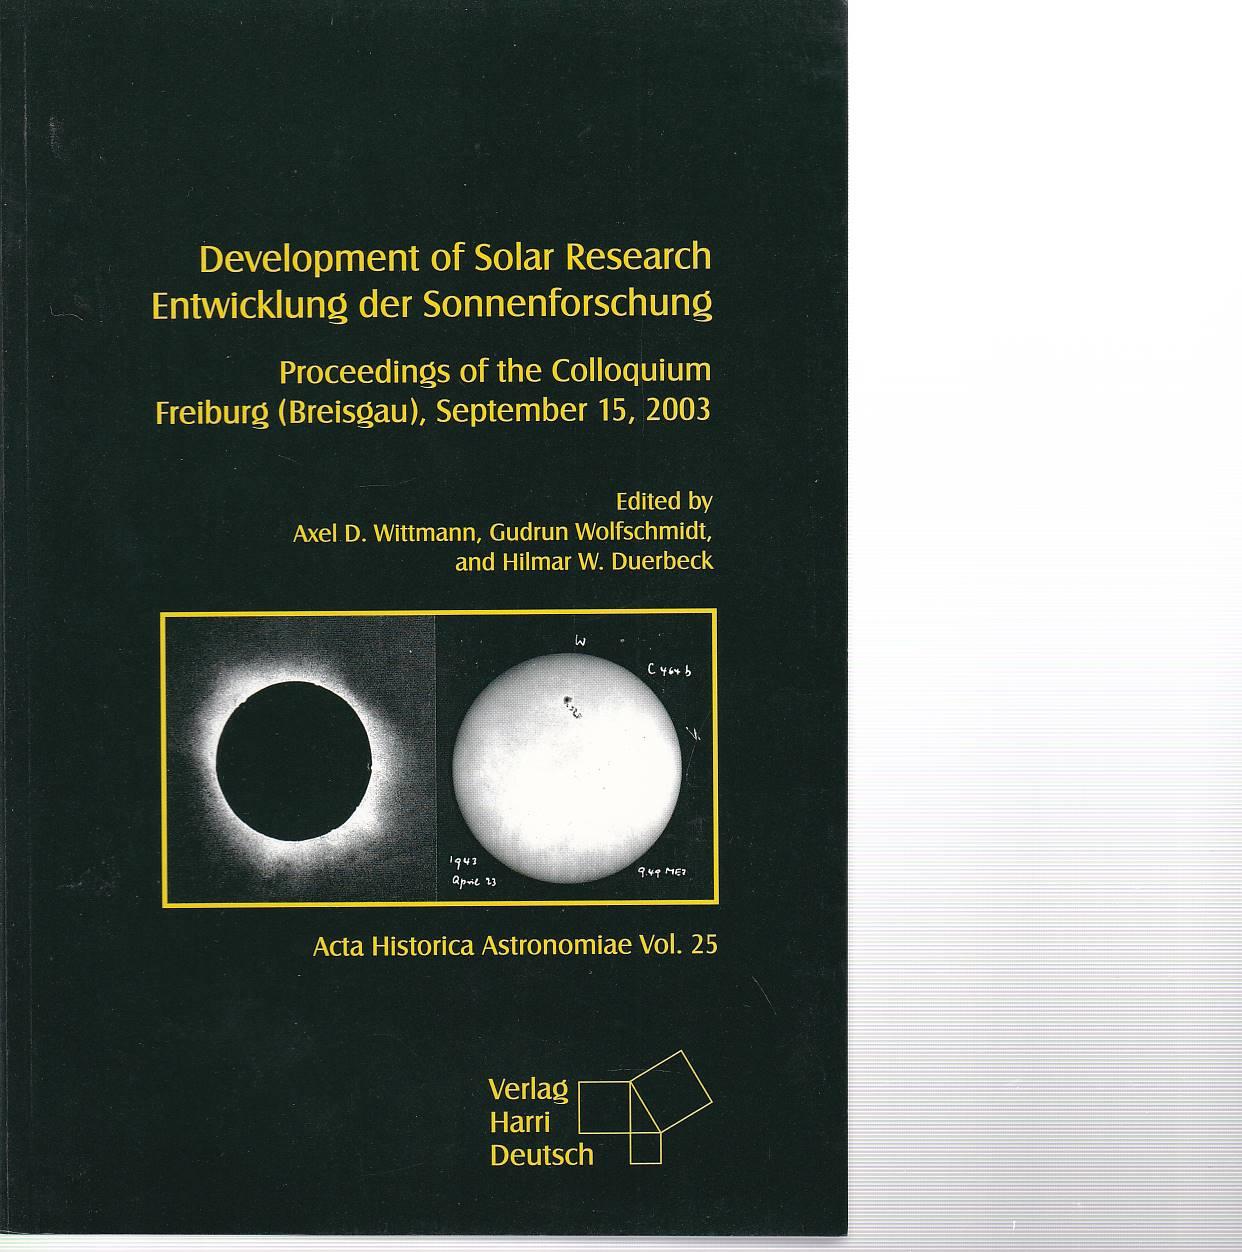 Development of Solar Research. Entwichlung der Sonnenforschung. Proceedings of the Colloquium Freiburg (Breisgau), September 15, 2003. - Wittmann / Wolfschmidt, Duerbeck ed.